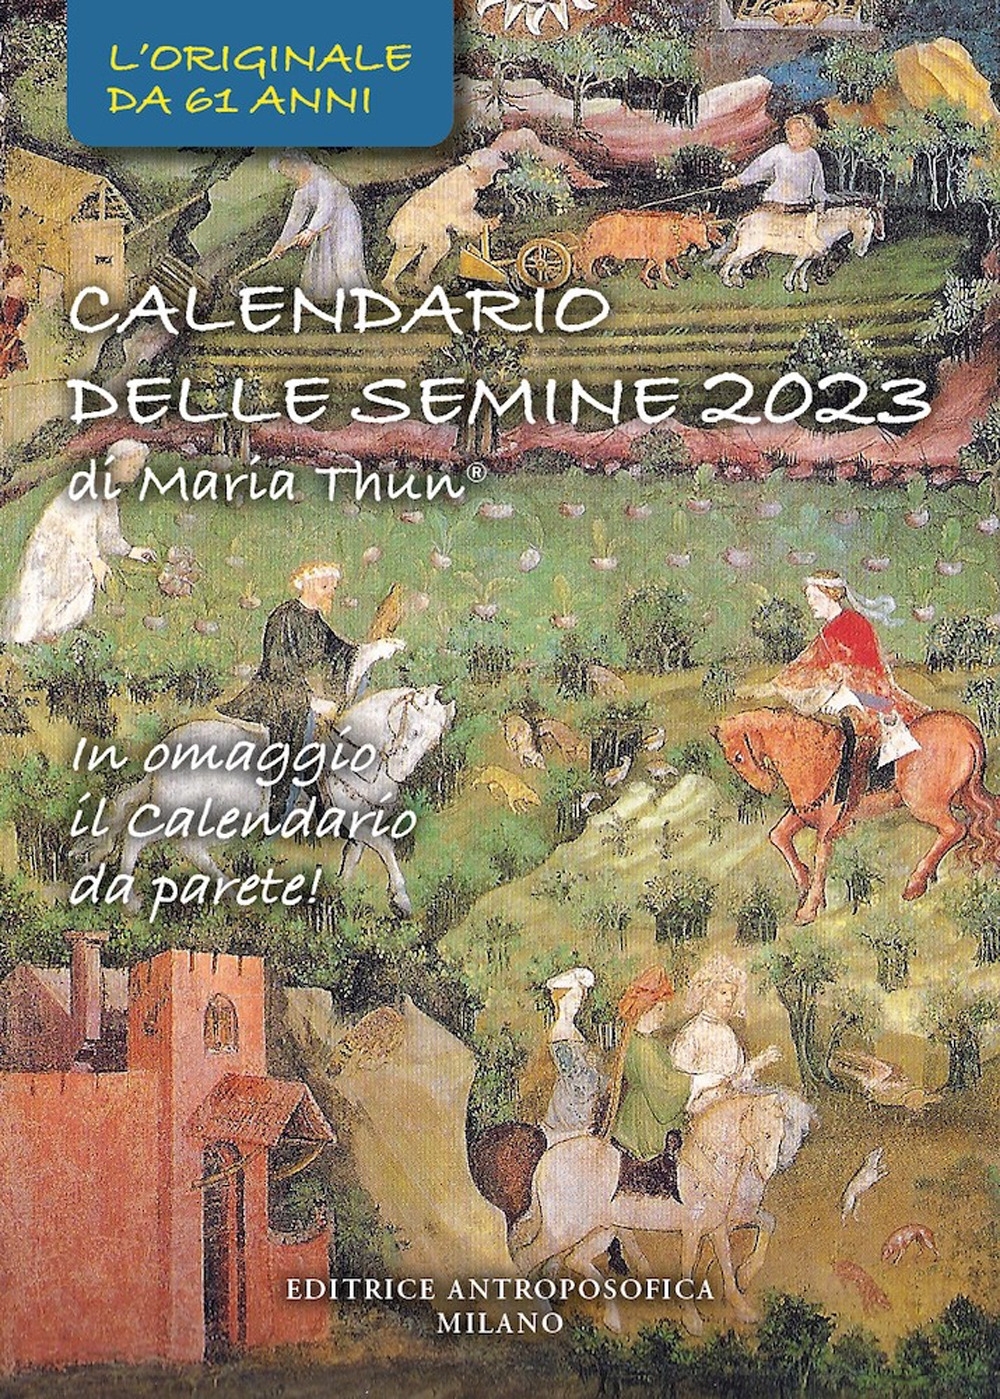 9788877876997 Maria Thun 2022 - Calendario delle semine di Maria